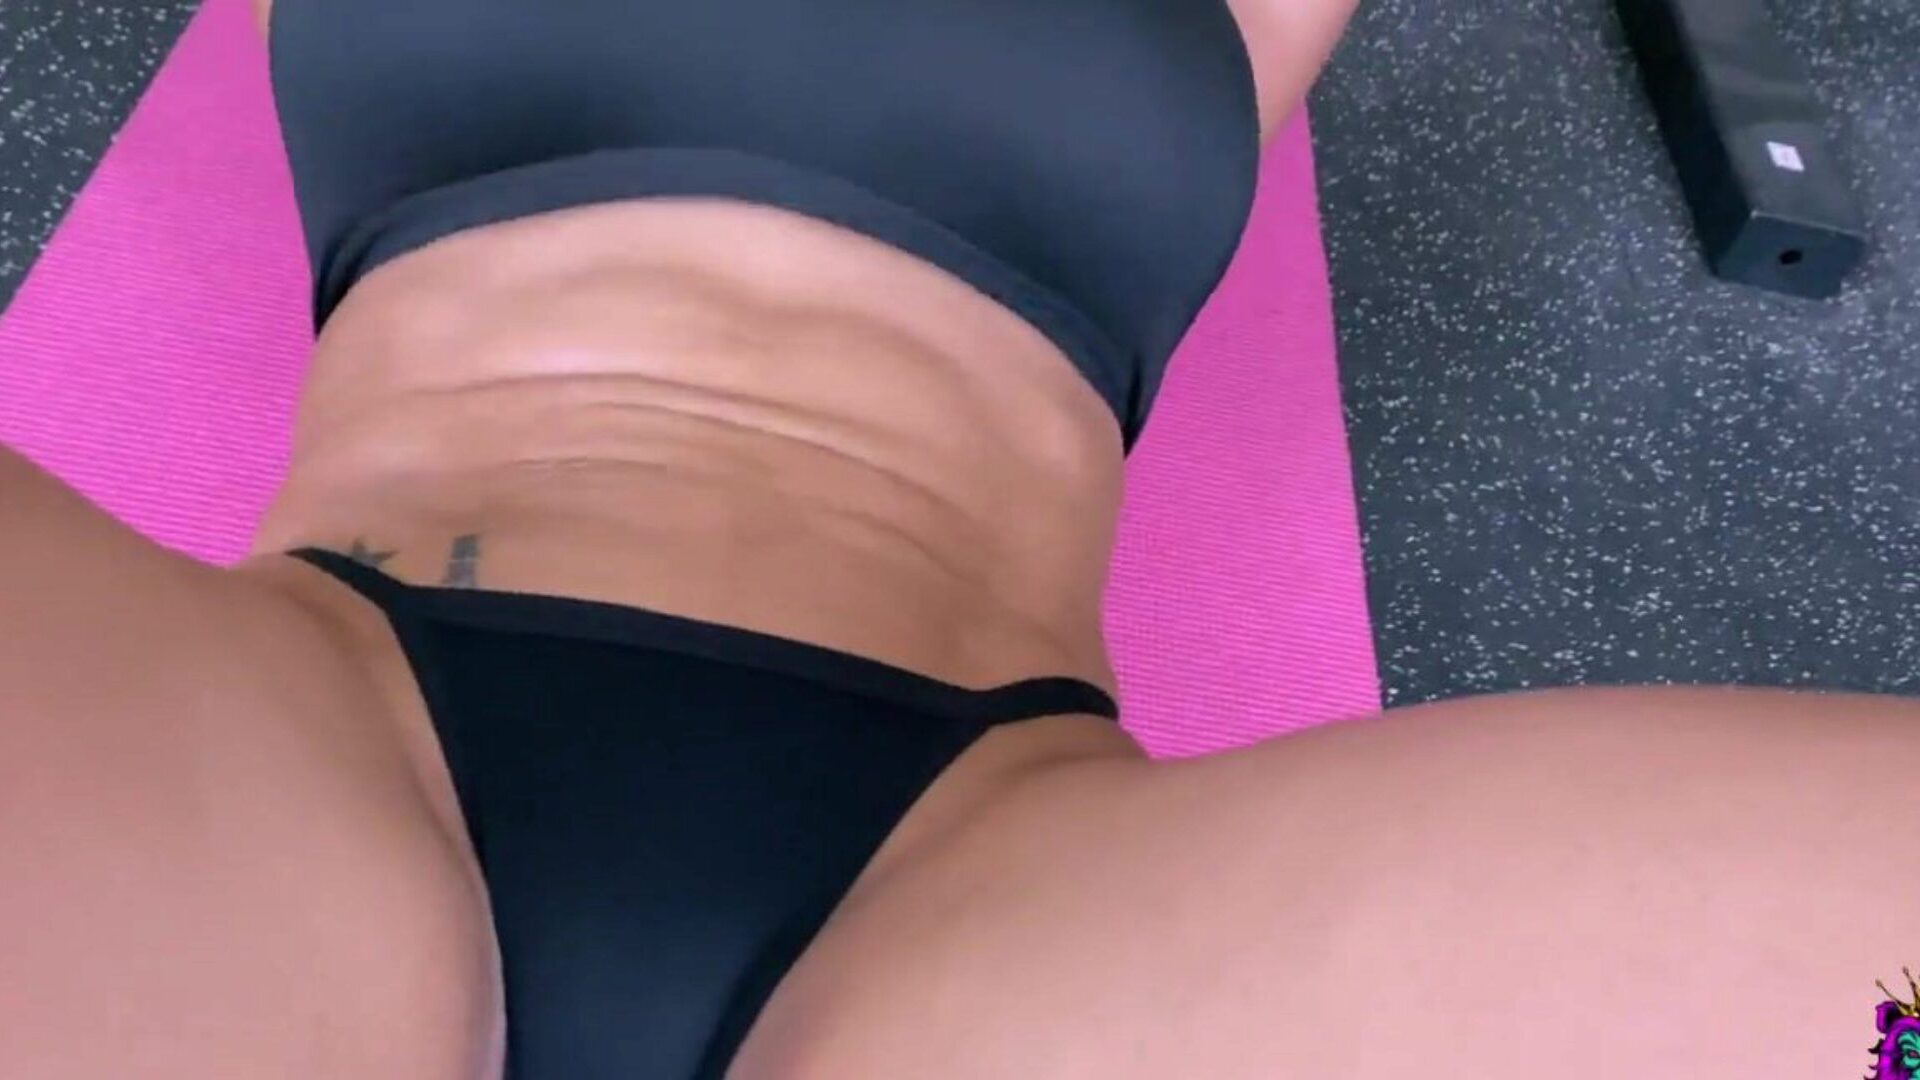 Morena de tetas grandes recibe una follada anal intensa en el gimnasio después del entrenamiento central